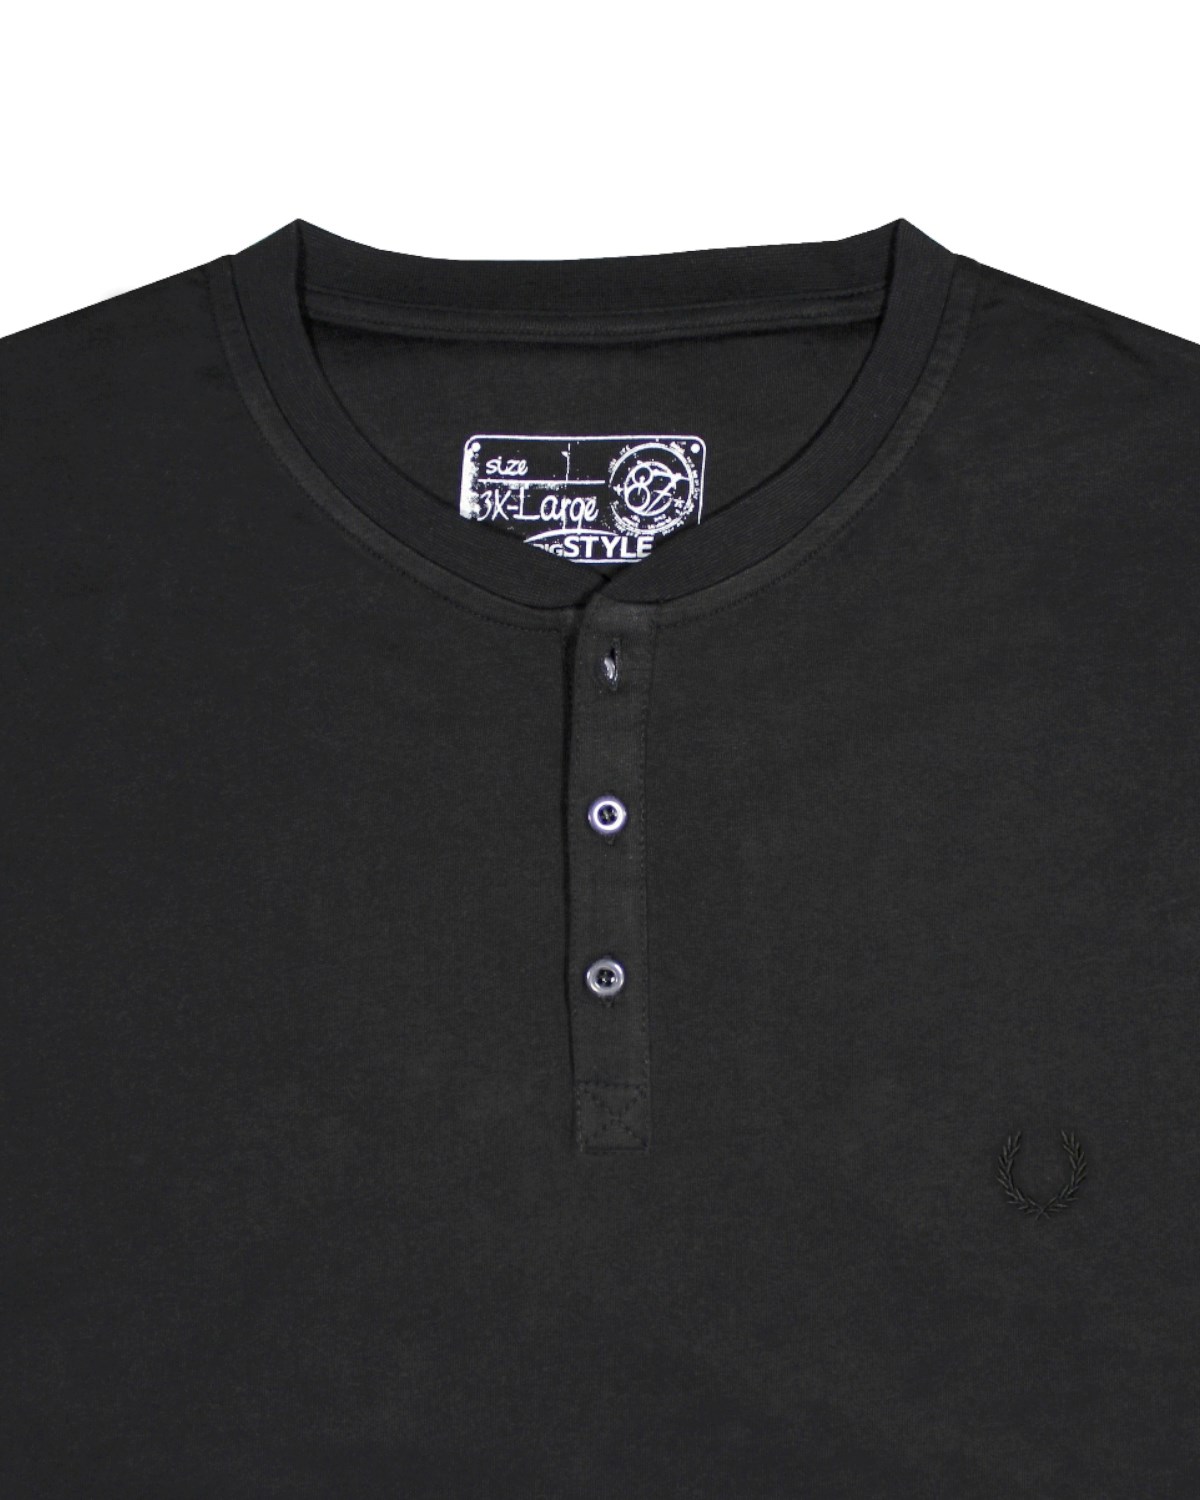 Büyük Beden Erkek Siyah Düğmeli Sweat T-Shirt